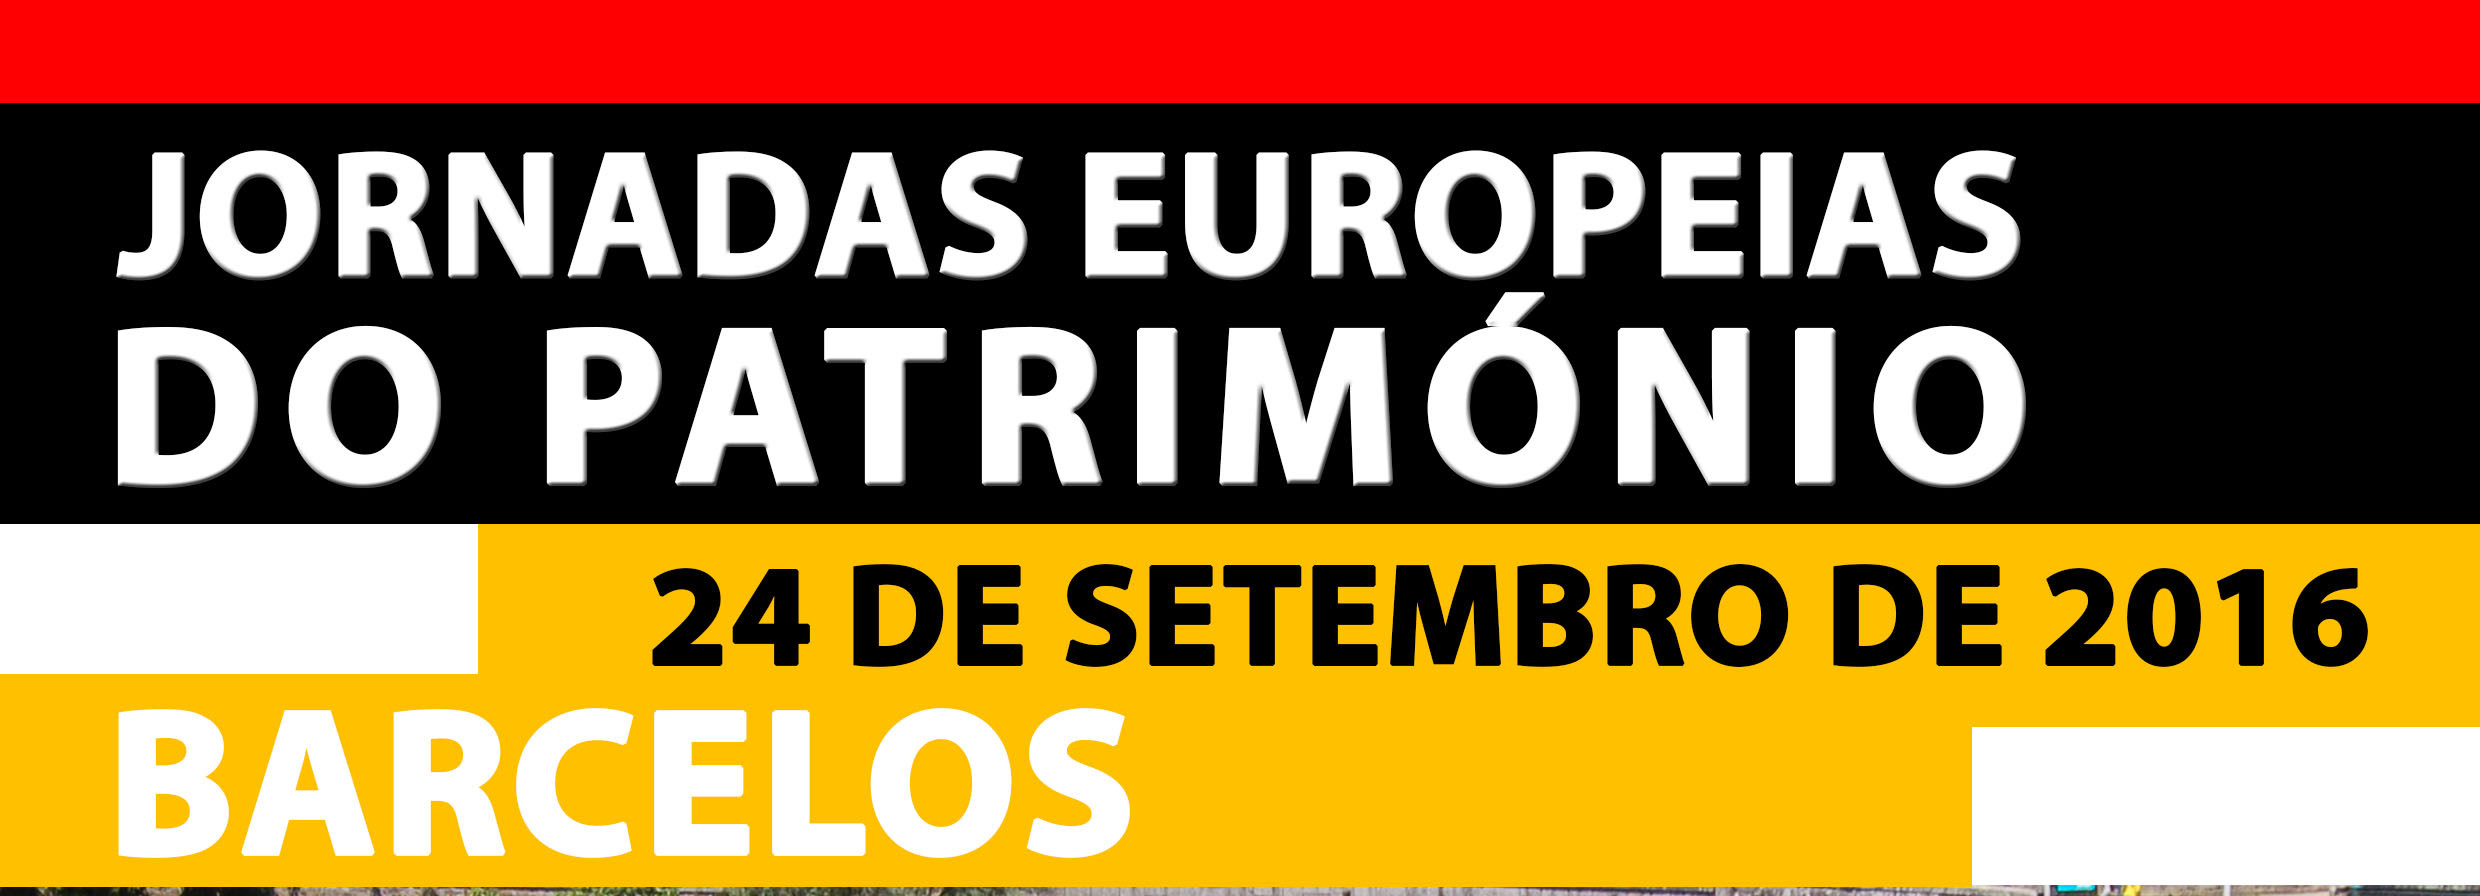 Jornadas Europeias do Património em Barcelos